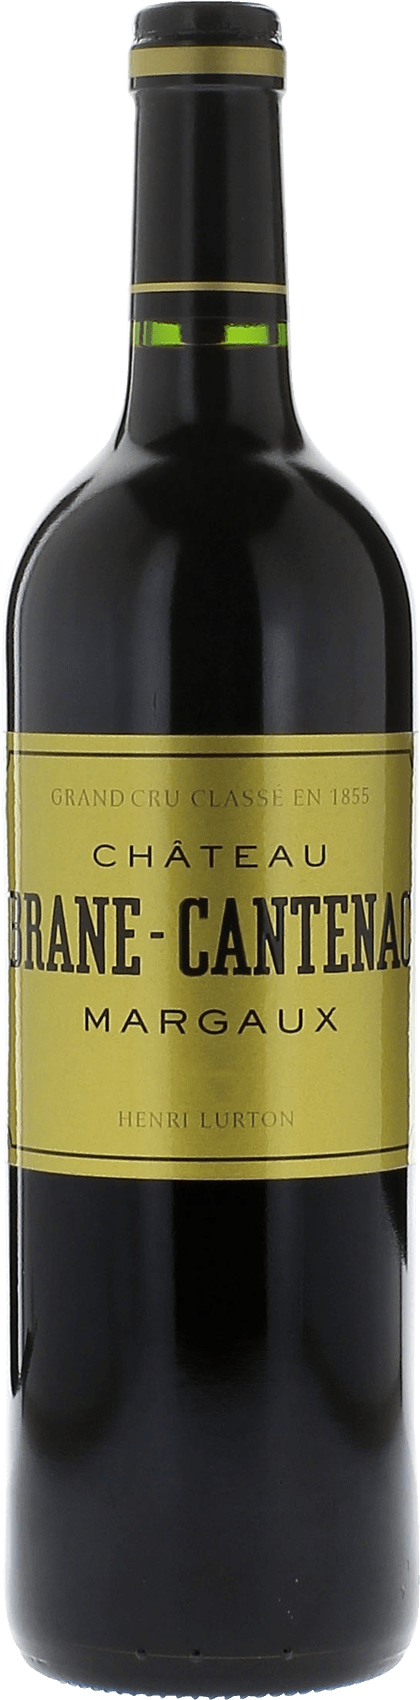 Brane cantenac 1971 2me Grand cru class Margaux, Bordeaux rouge